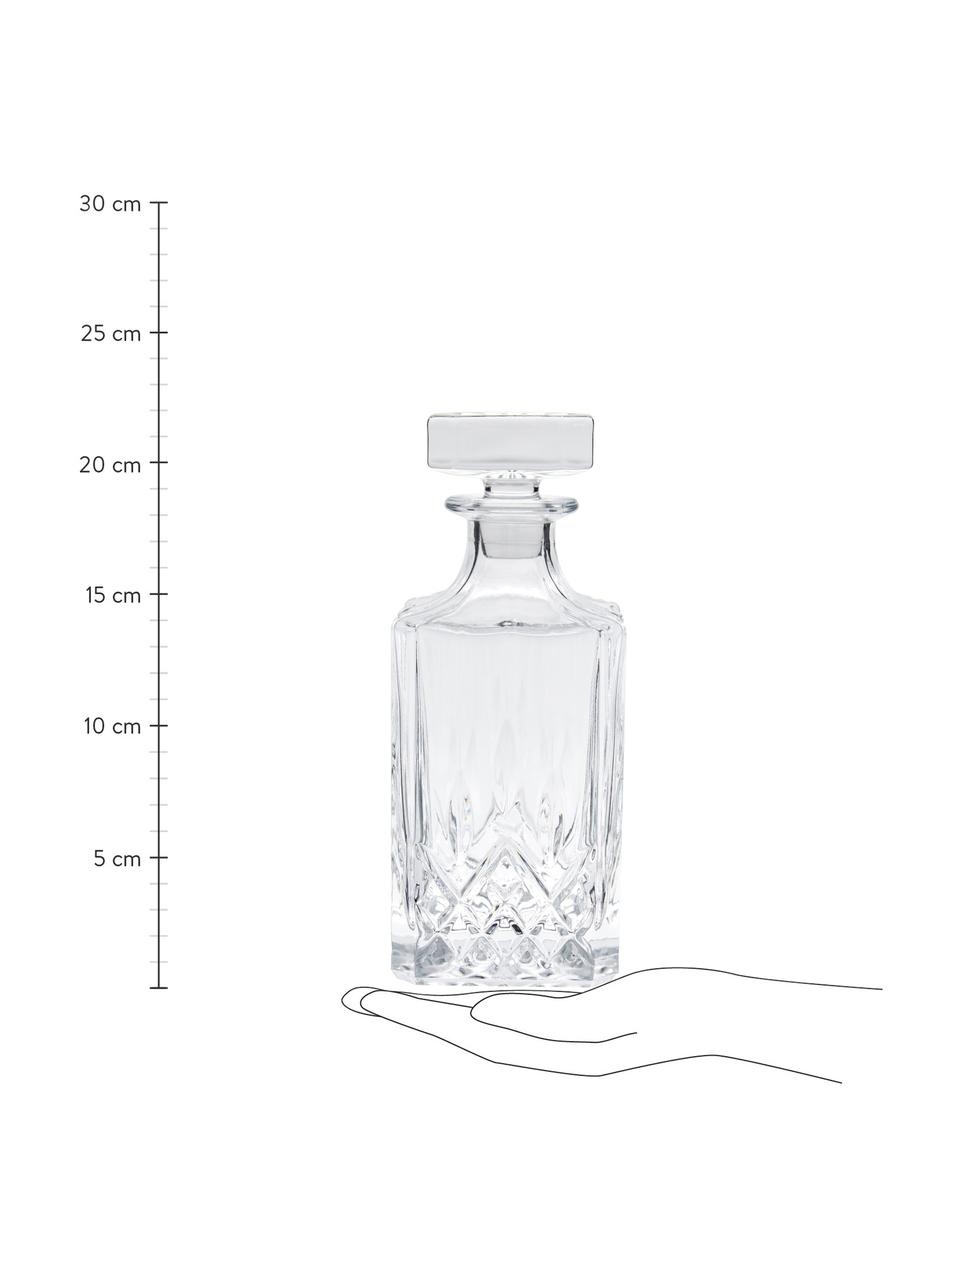 Whiskyset George met kristalreliëf, 3-delig, Glas, Transparant, Set met verschillende groottes